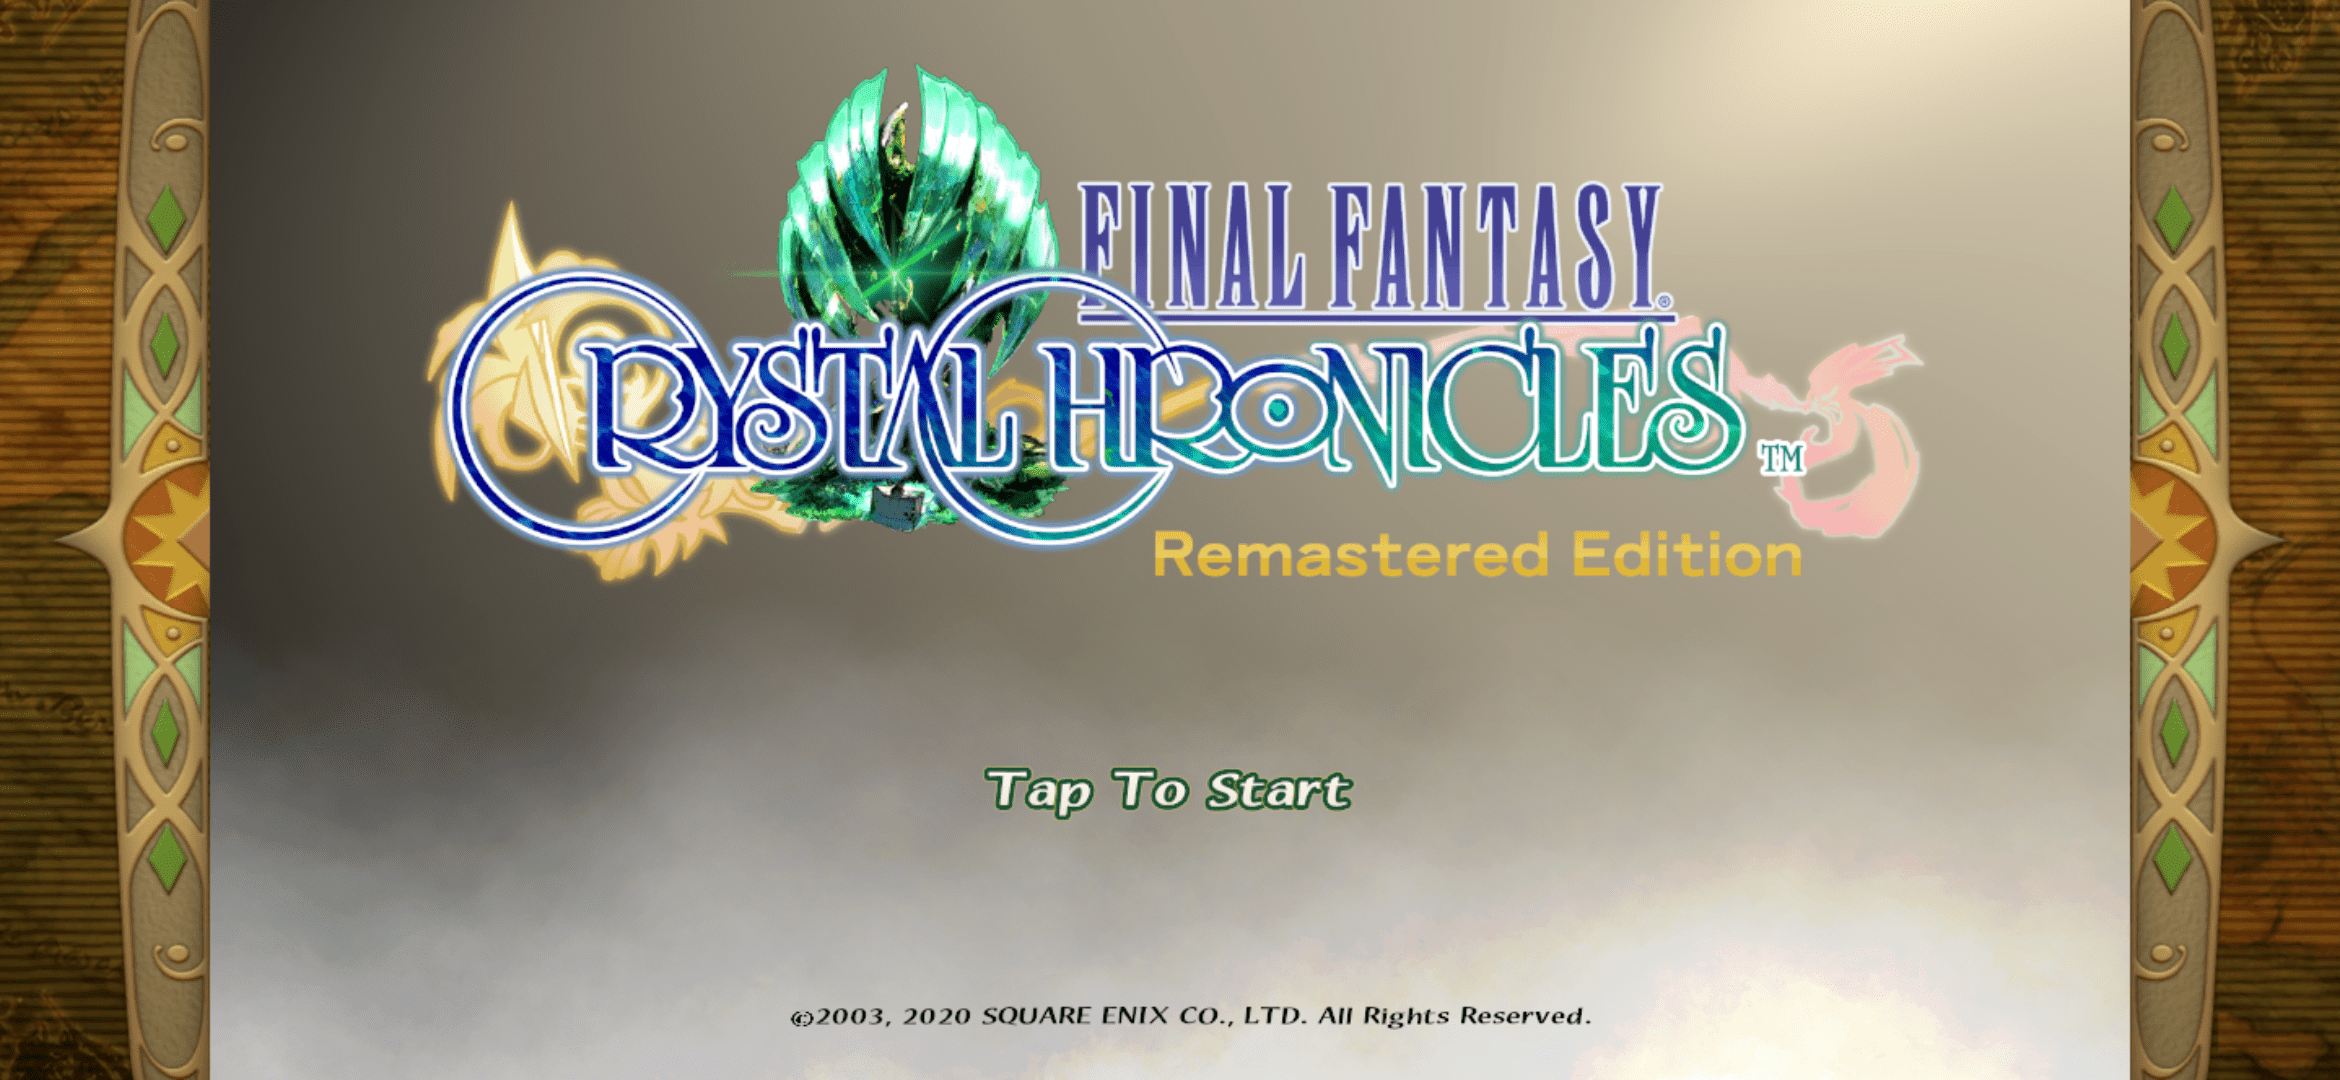 Final Fantasy Crystal Chronicles Remastered Edition ist endlich da und das Warten hat sich nicht gelohnt 95